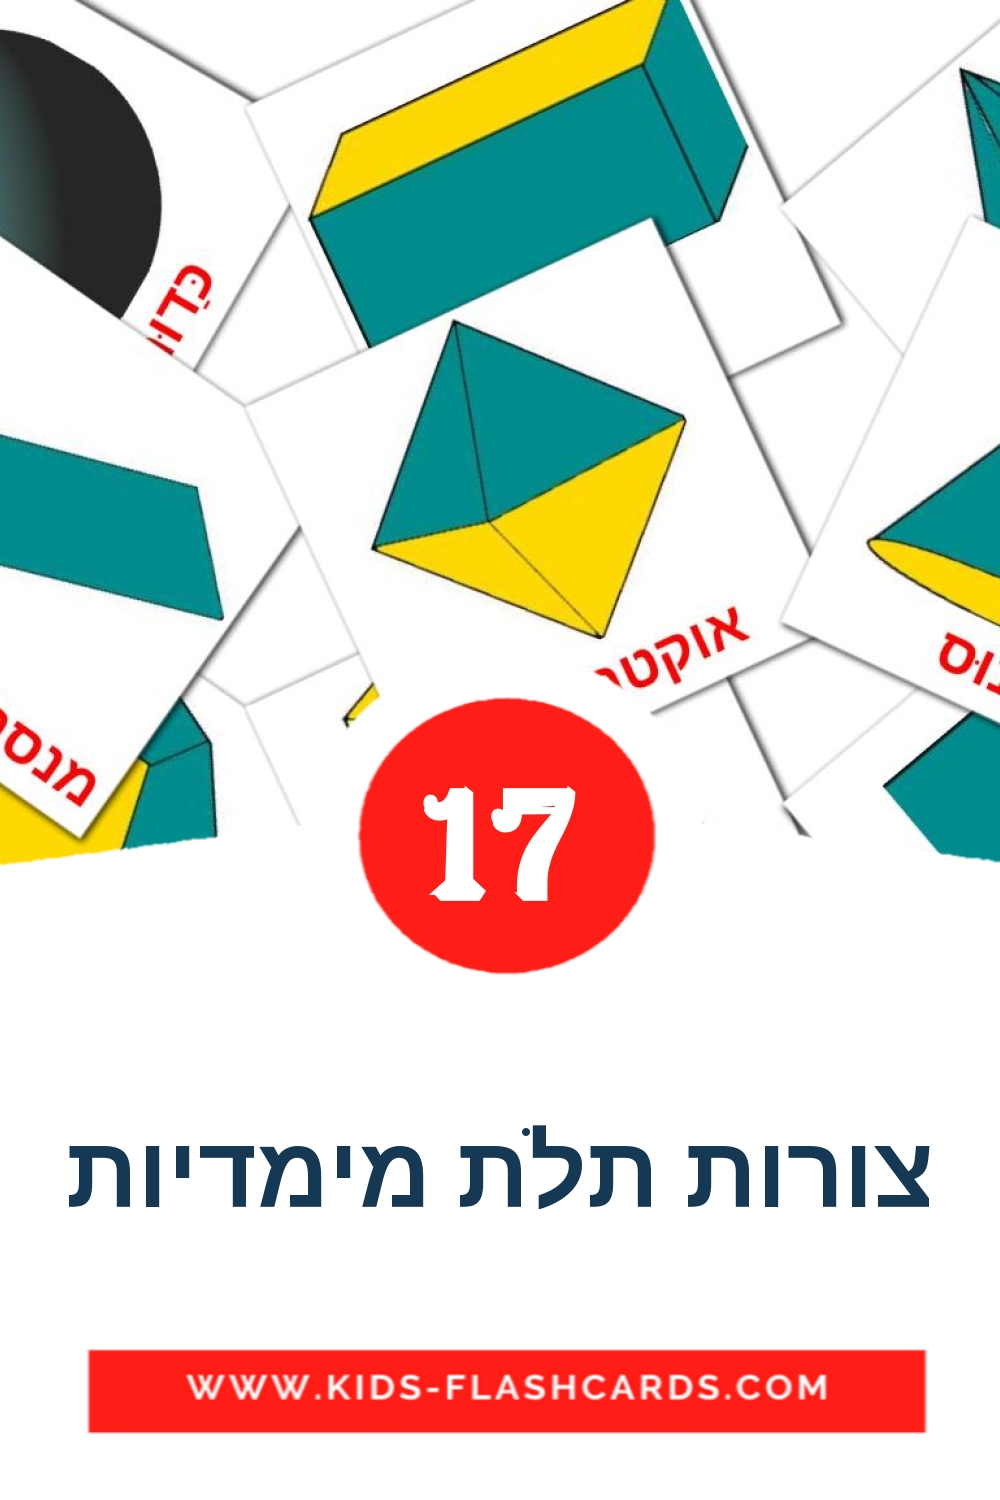 17 Cartões com Imagens de צורות תלת מימדיות para Jardim de Infância em hebraico